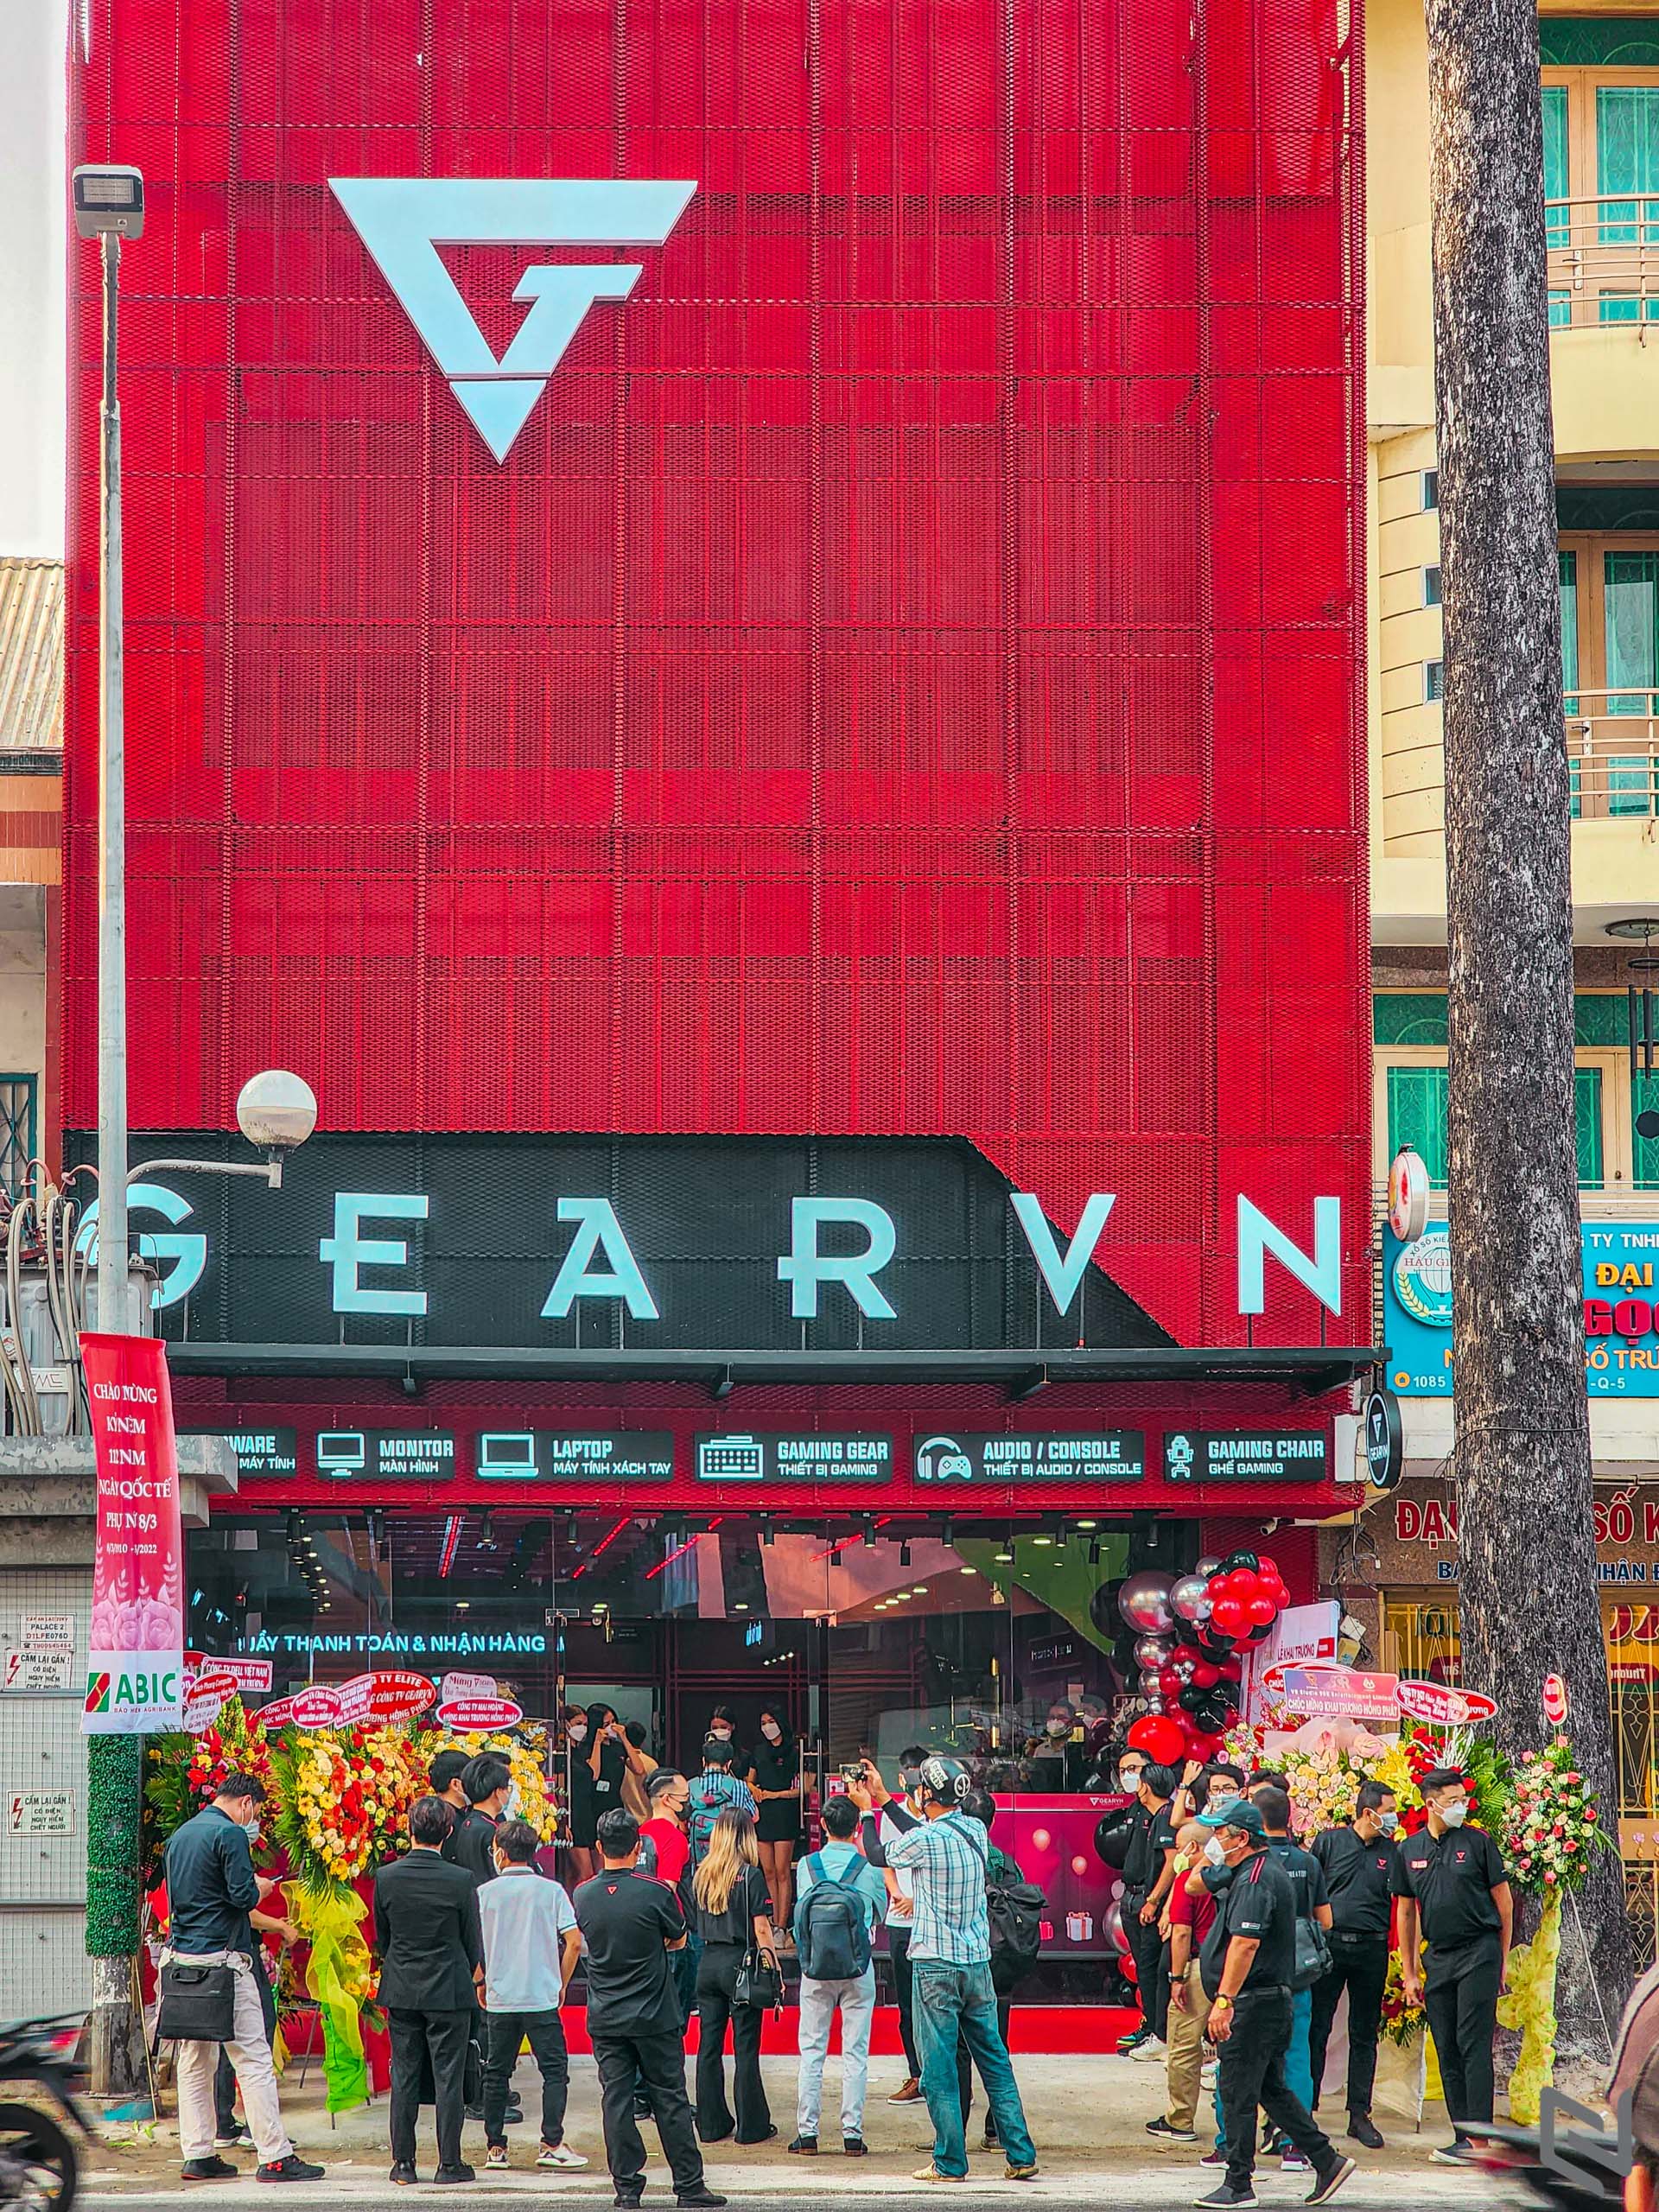 Showroom GearVN Trần Hưng Đạo - Điểm mua sắm lý tưởng dành cho cộng đồng game thủ giữa lòng thành phố Hồ Chí Minh